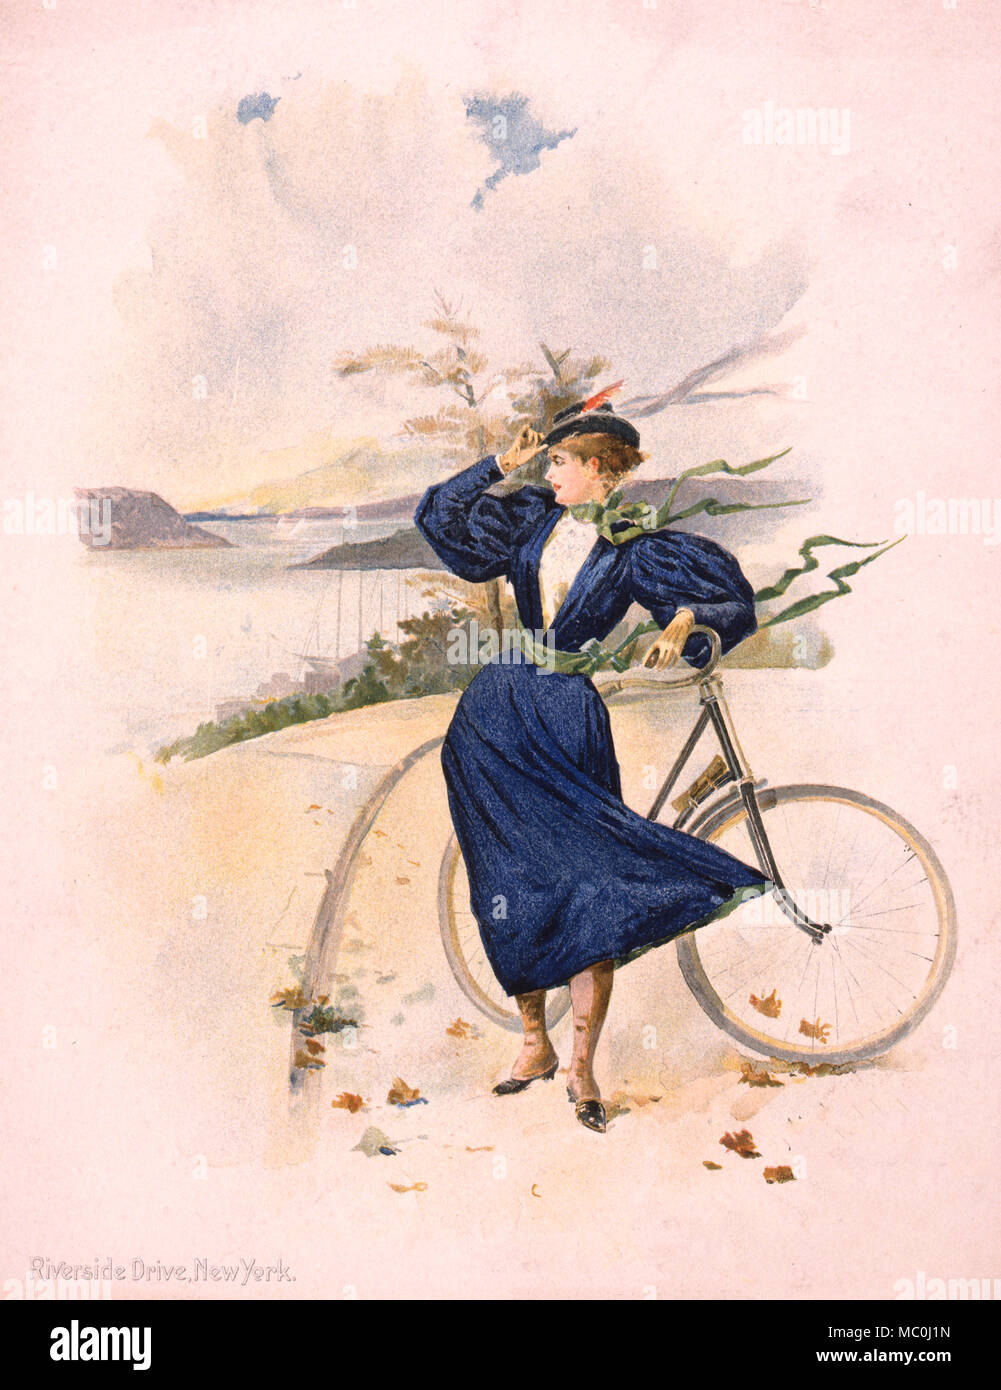 Riverside Drive, New York - Imprimer montre une jeune femme debout à côté  d'un vélo près de l'eau, circa 1896 Photo Stock - Alamy